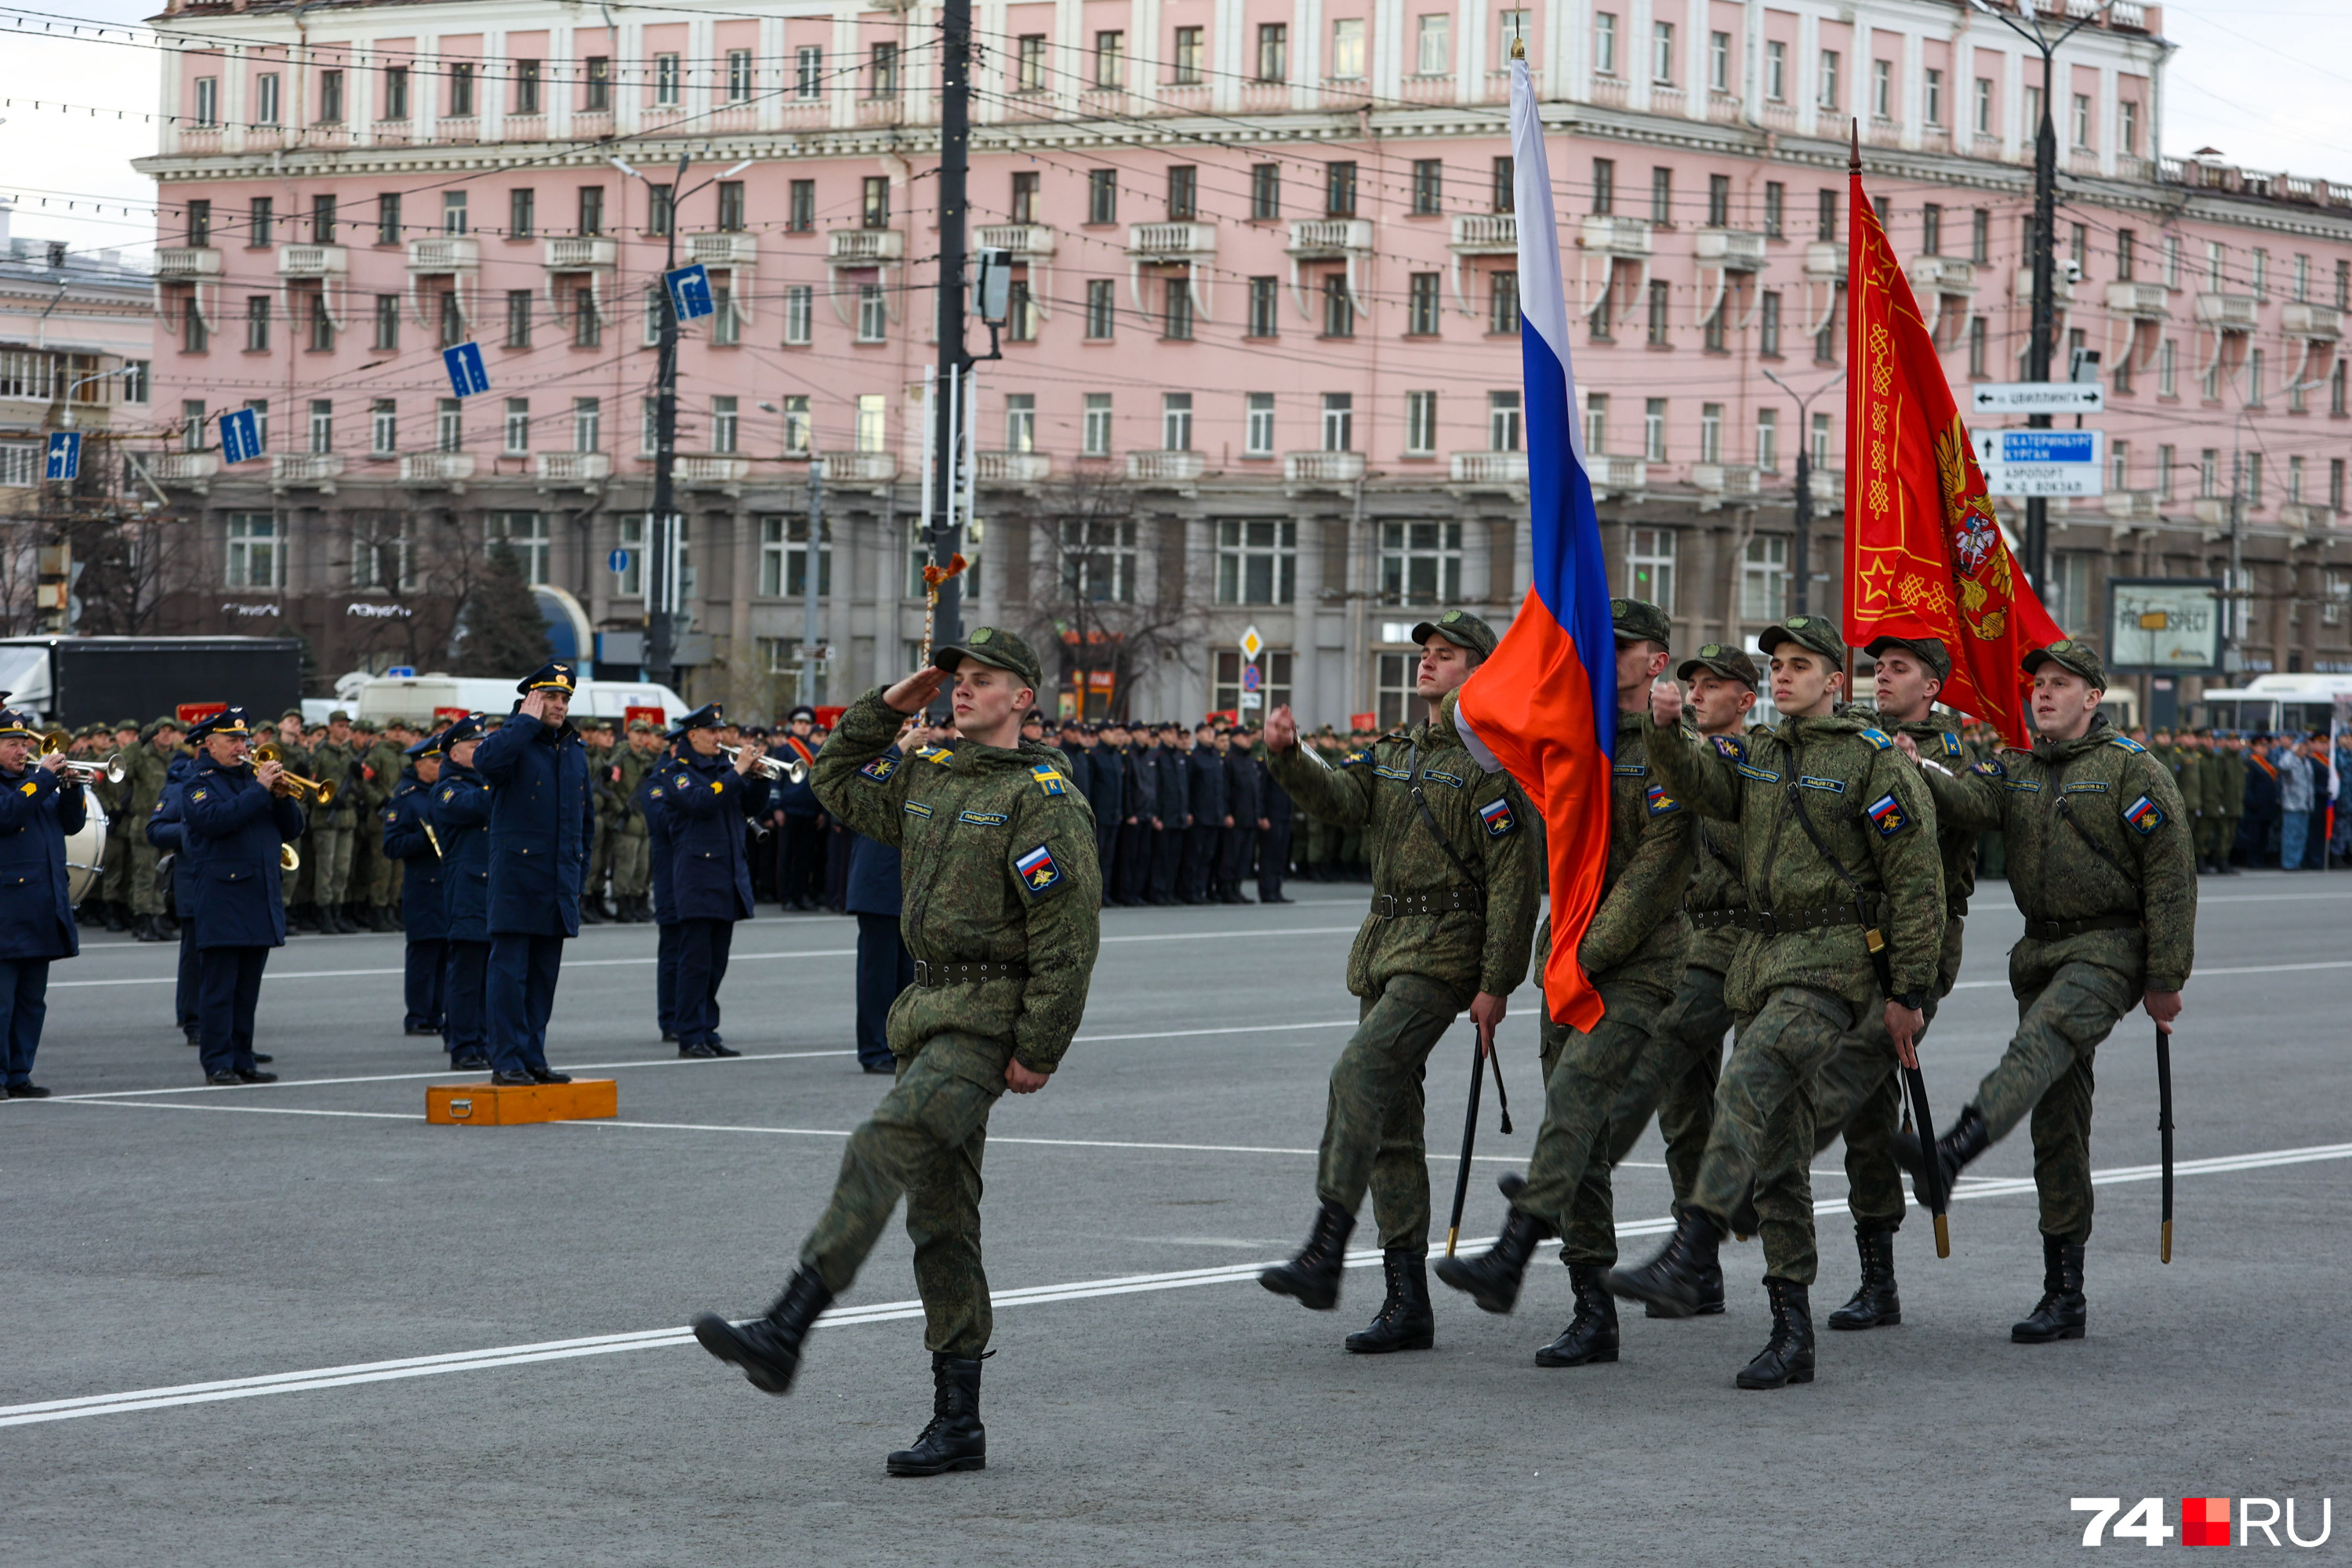 Традиционно парад открывают учащиеся ЧВВАКУШа, которые вносят на площадь знамя Победы и государственный флаг РФ